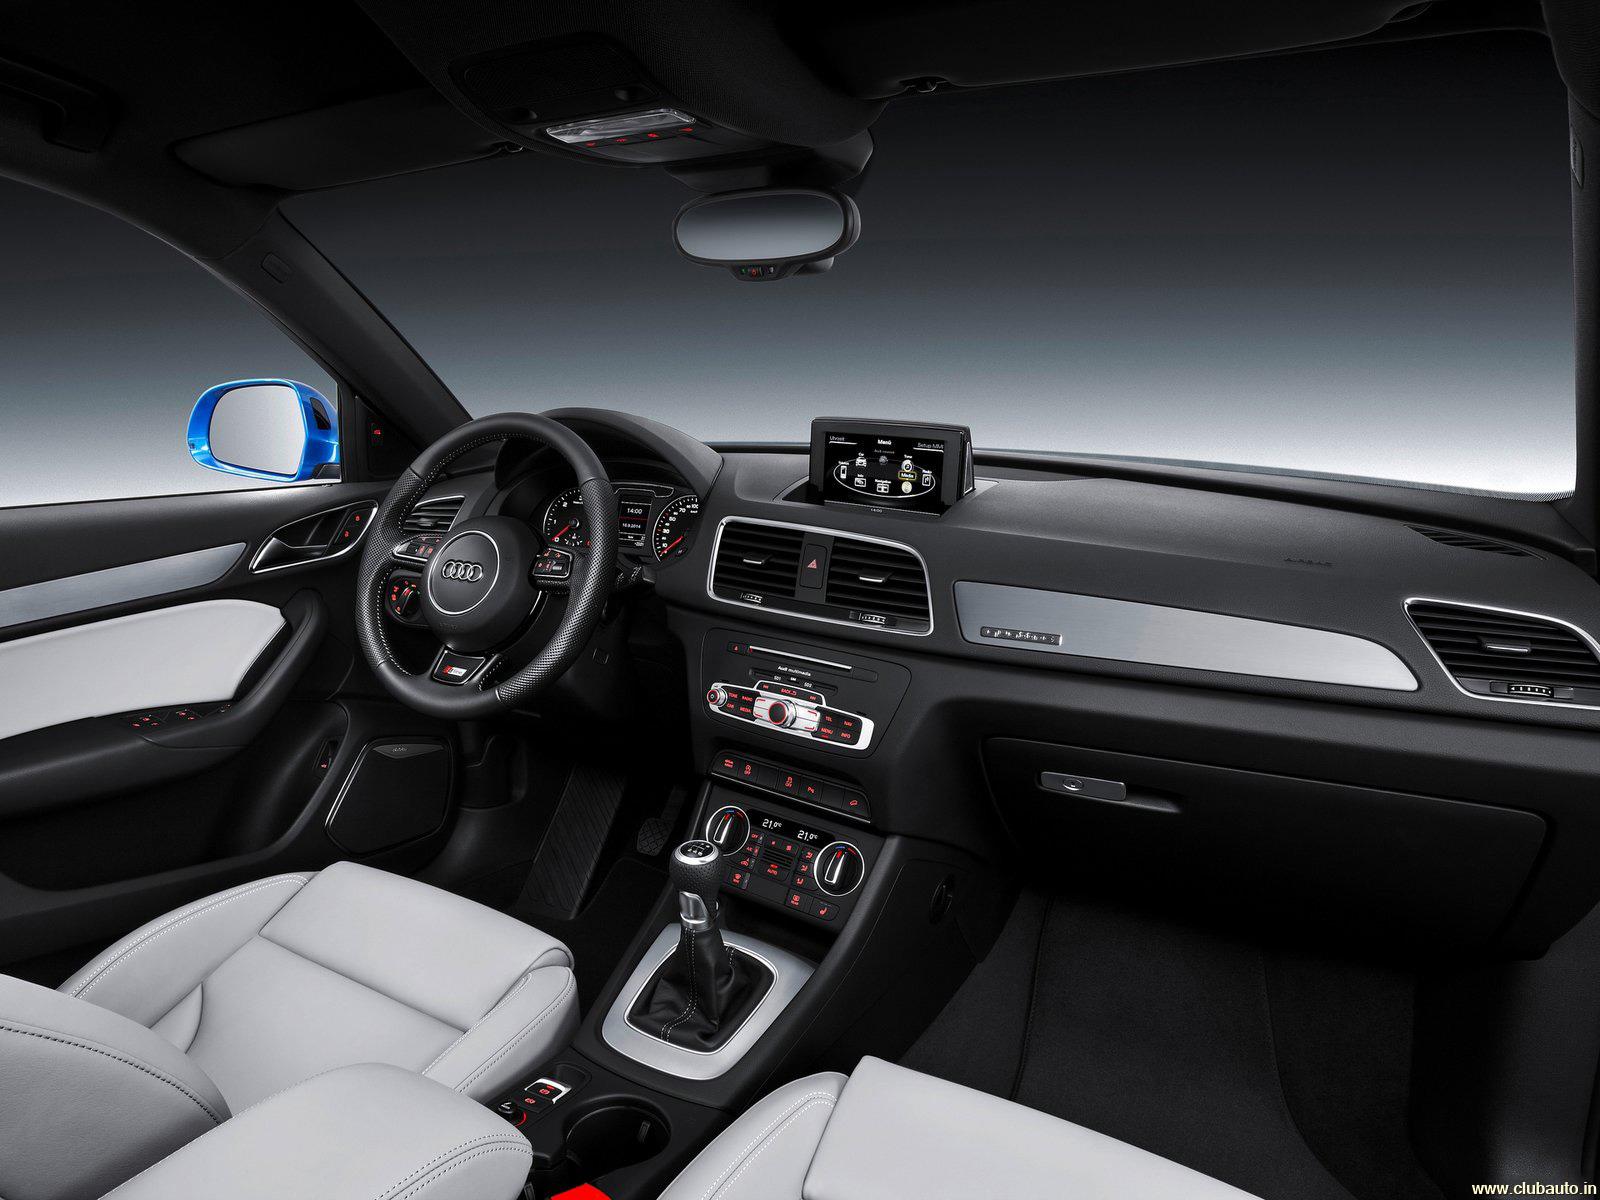 Audi Q3 - Inside 2019 Audi Q3 , HD Wallpaper & Backgrounds